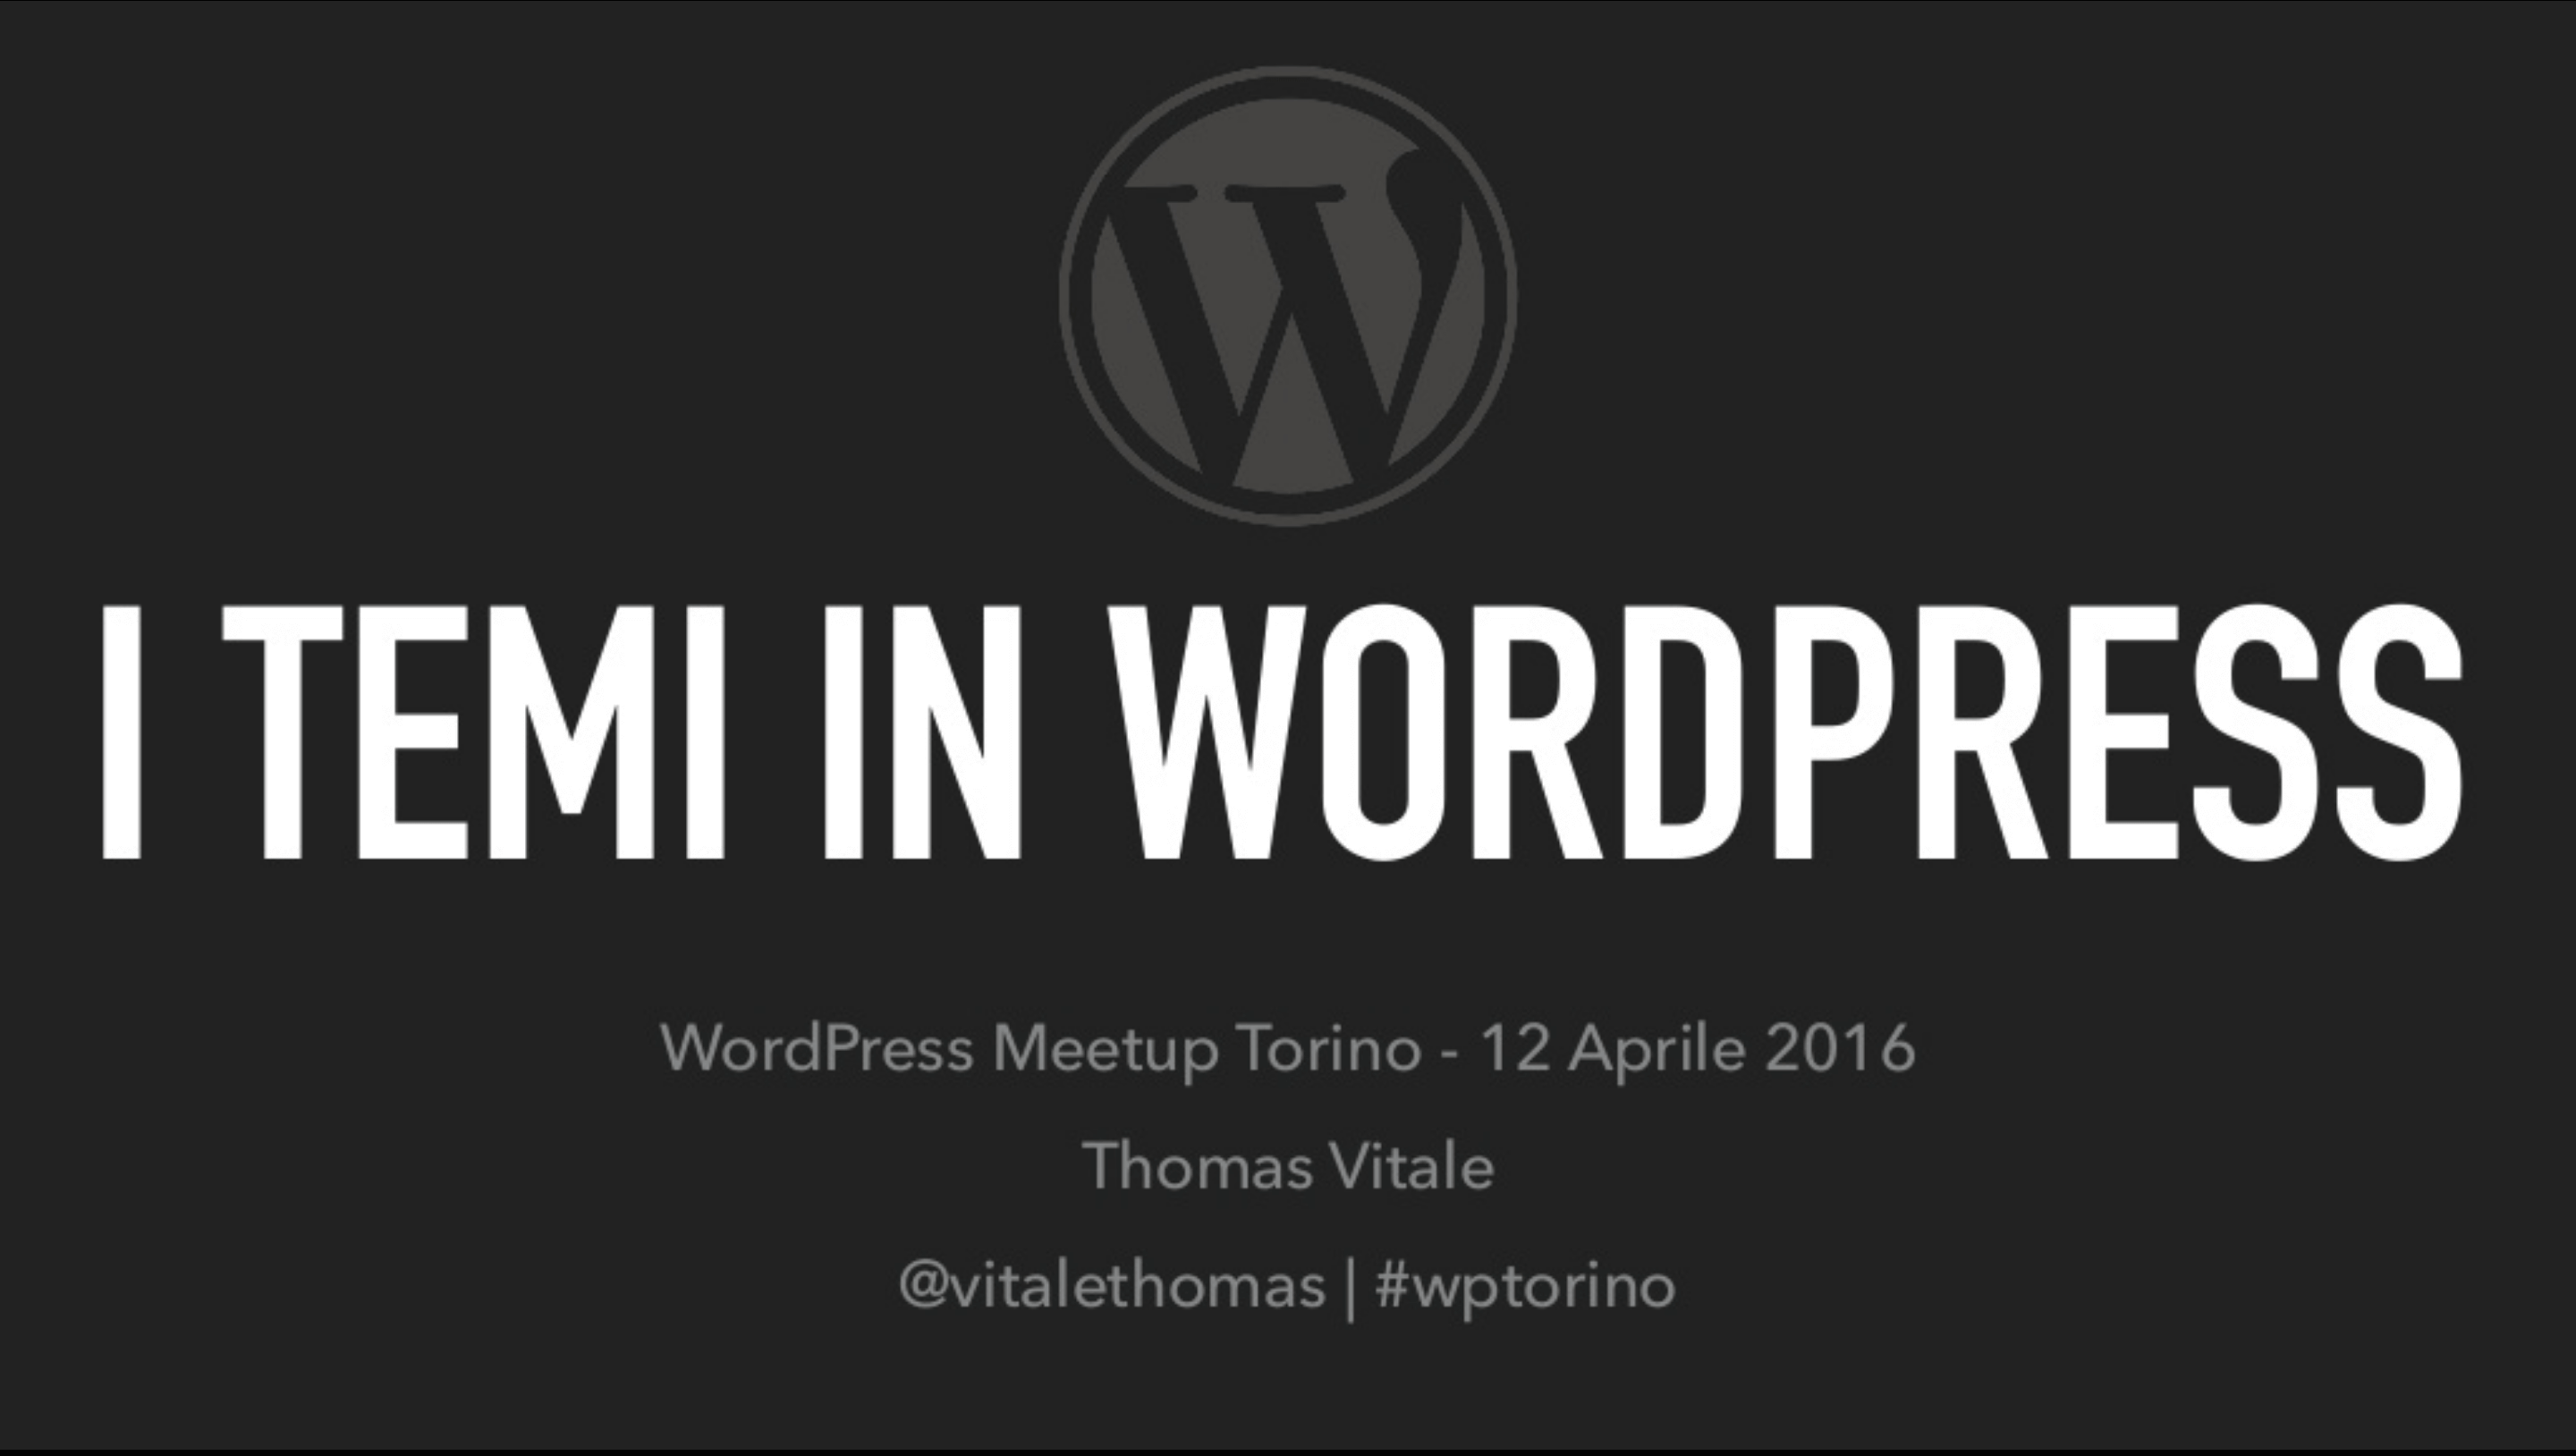 WordPress Meetup Torino: "I Temi in WordPress" (Talk)